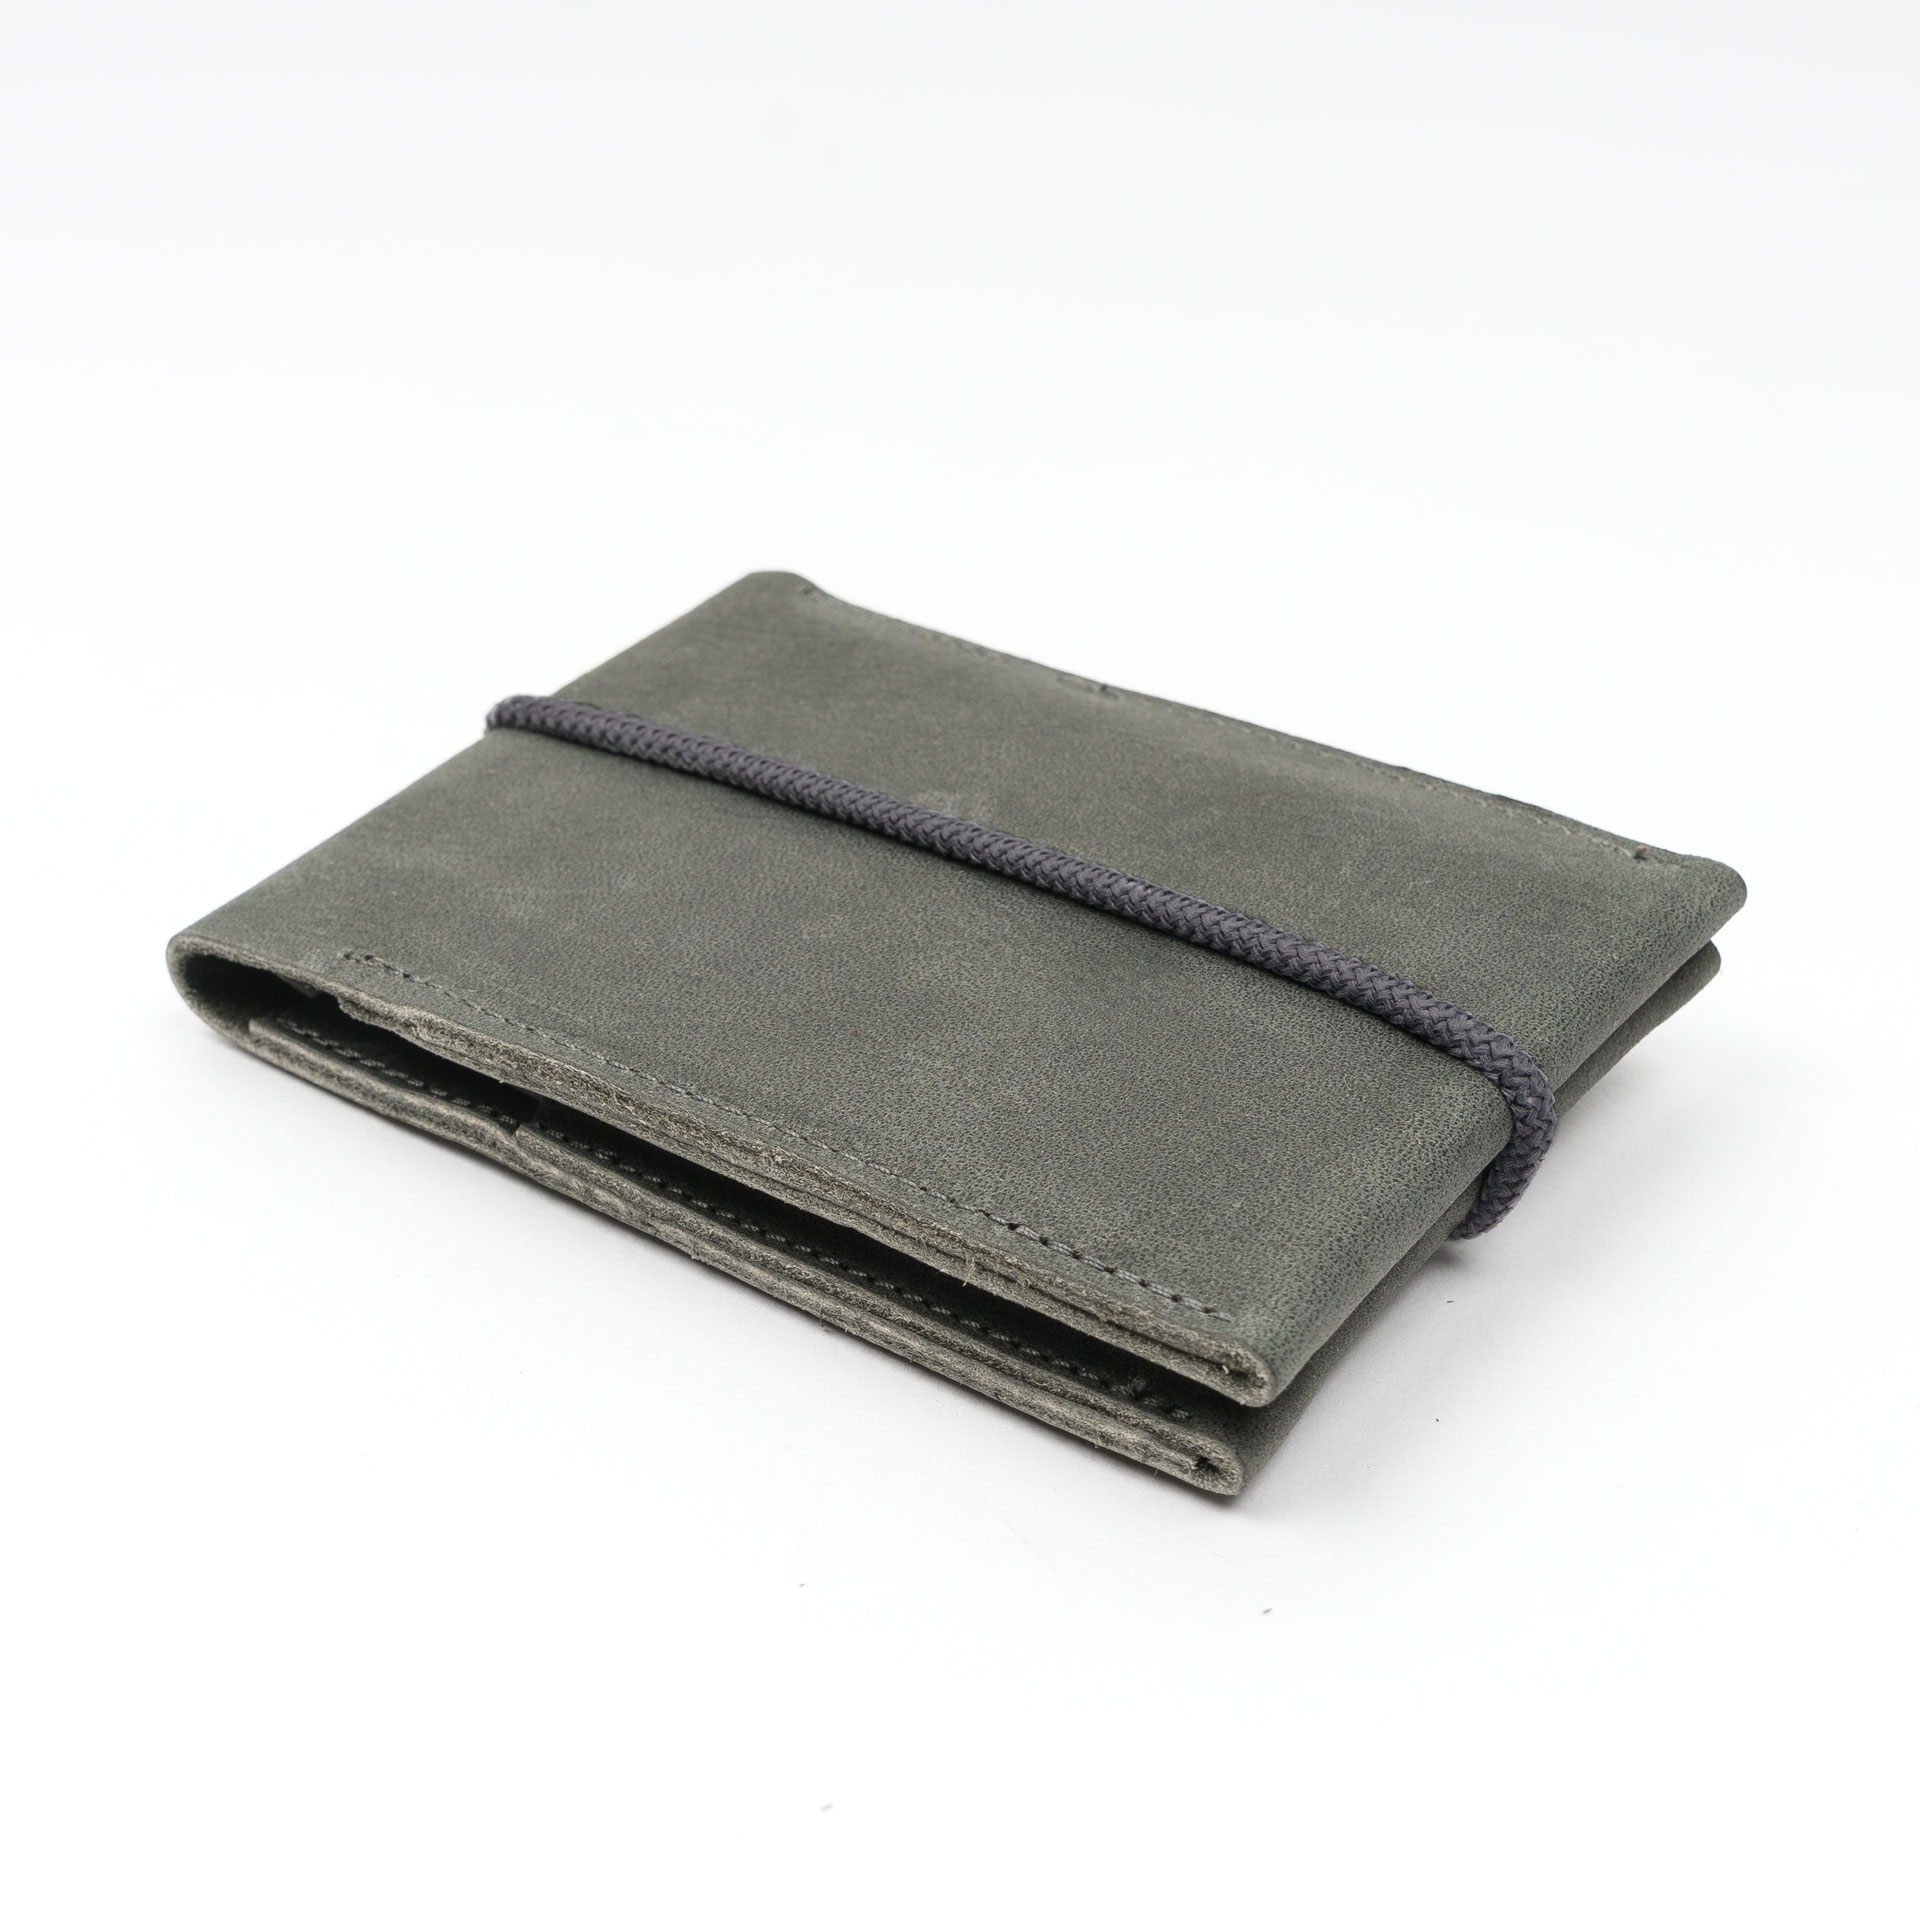 Schlichtes Portemonnaie OLI SMALL aus Naturleder in Steingrau mit grauem Verschlussband